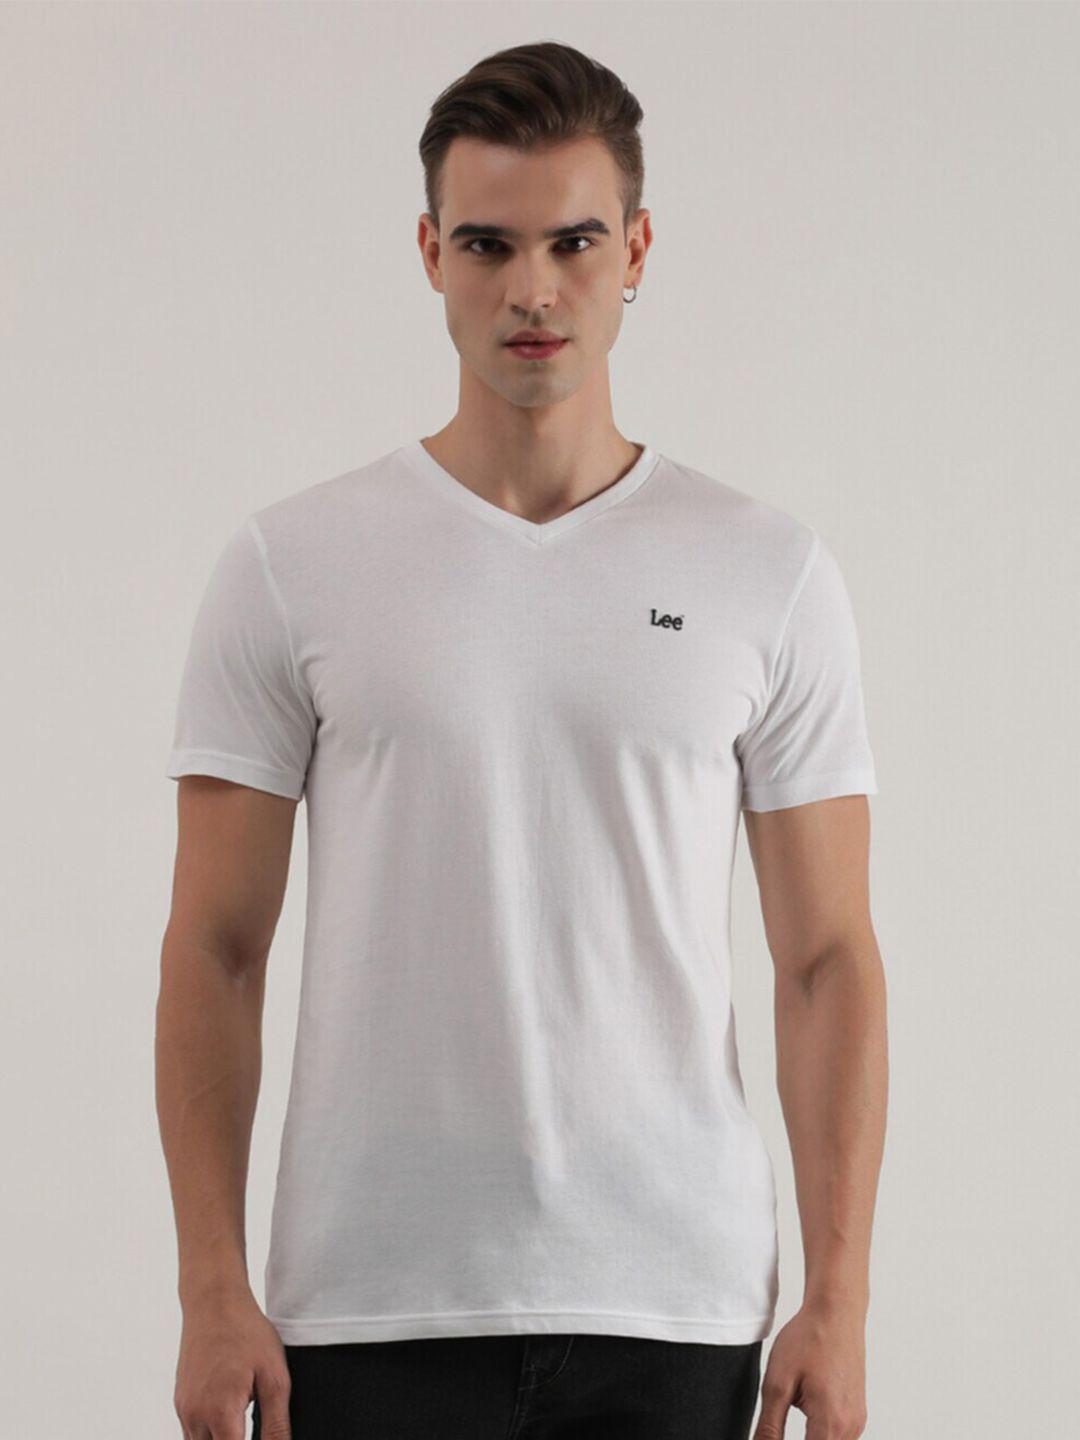 lee v-neck cotton slim fit t-shirt